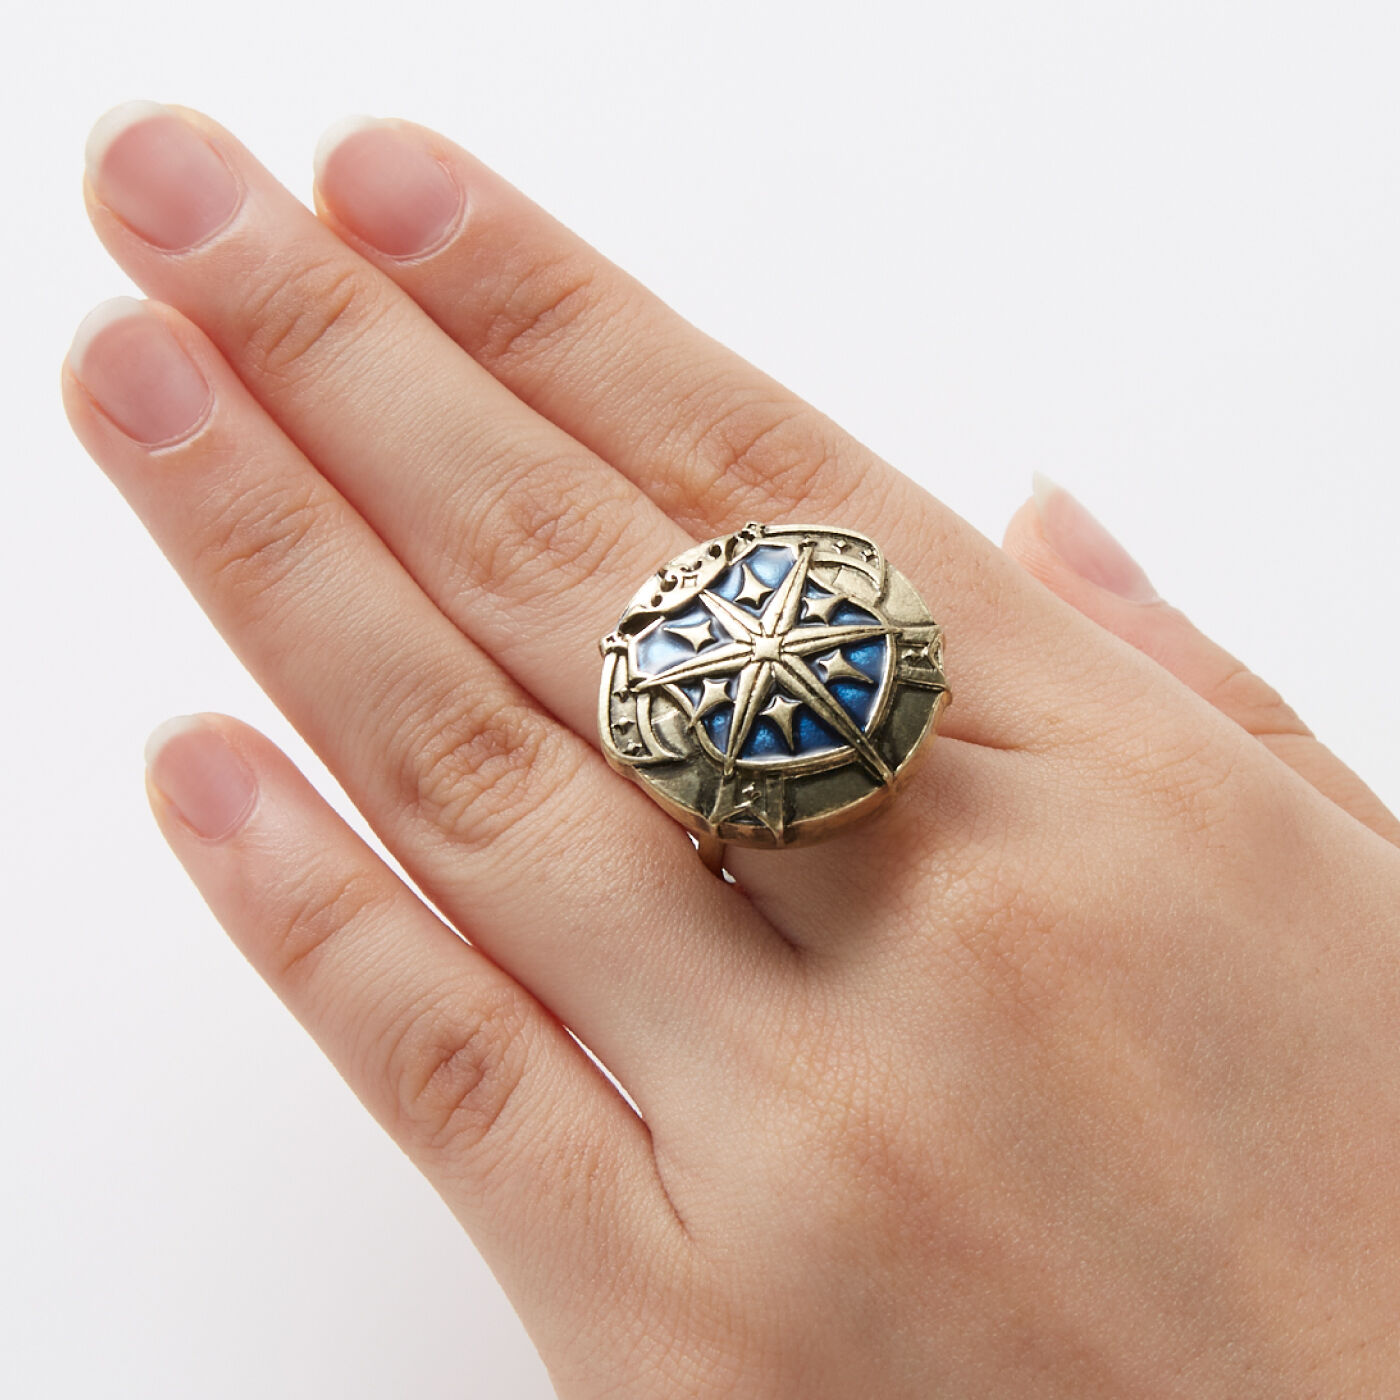 魔法部|魔法部×魔法使いの約束　国章ボタンカバー〈南の国〉|指輪に付ければ、存在感のある大きめのモチーフリング風に。※指輪の形状によっては付けられない場合があります。※お届けする柄とは異なります。